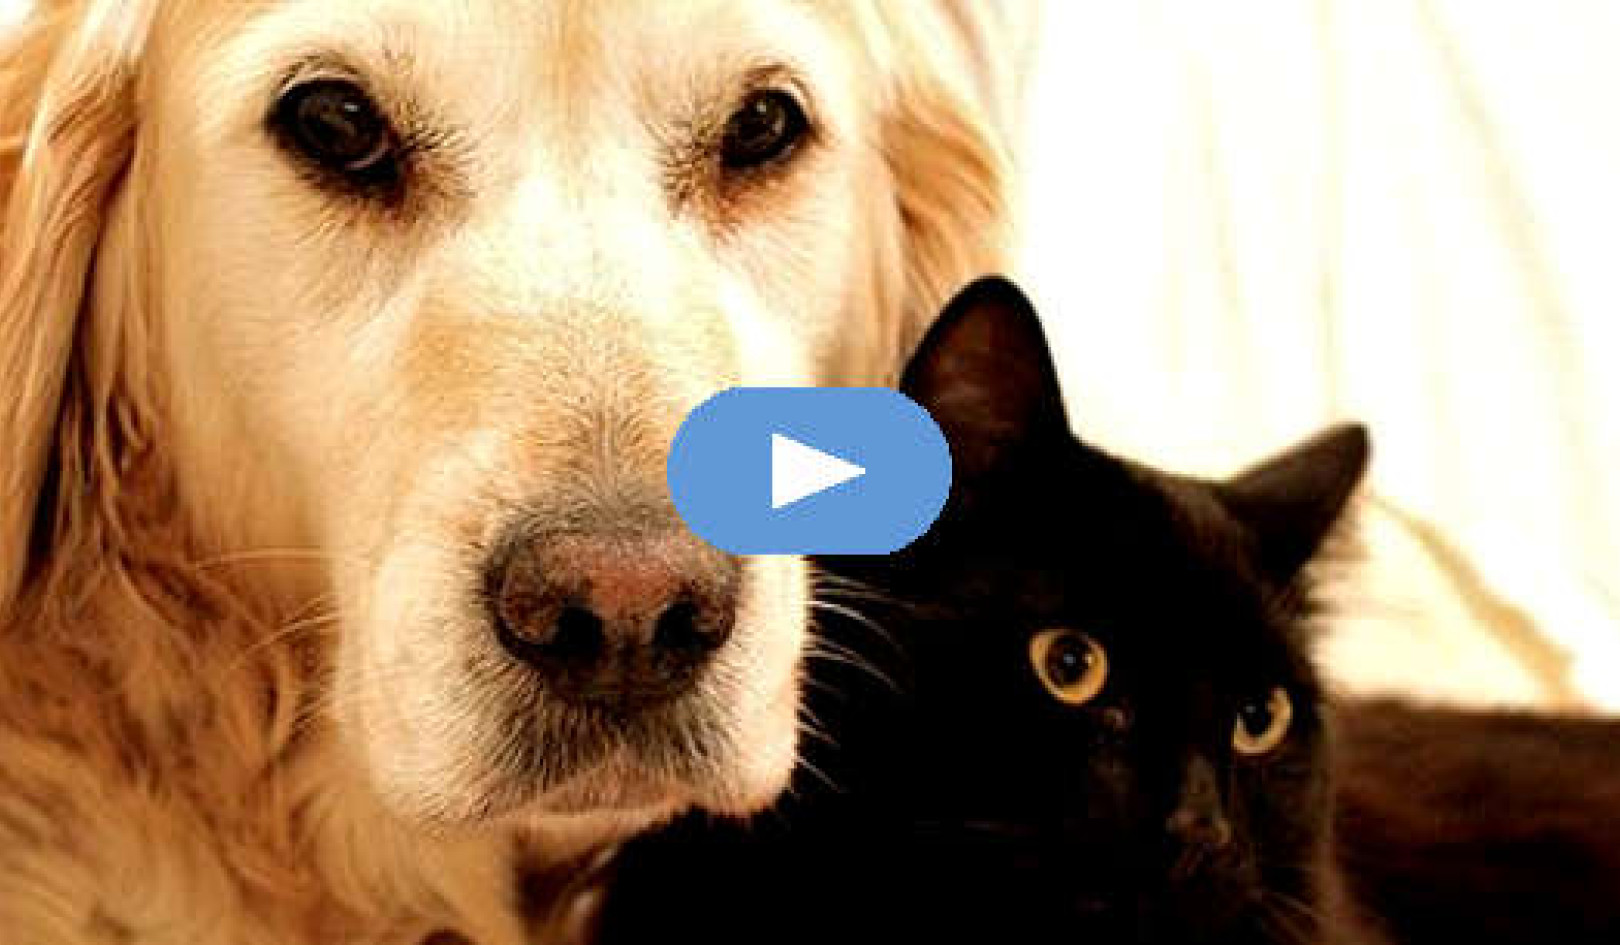 هدايا من الحيوانات الأليفة - من خلال الحياة والموت (فيديو)